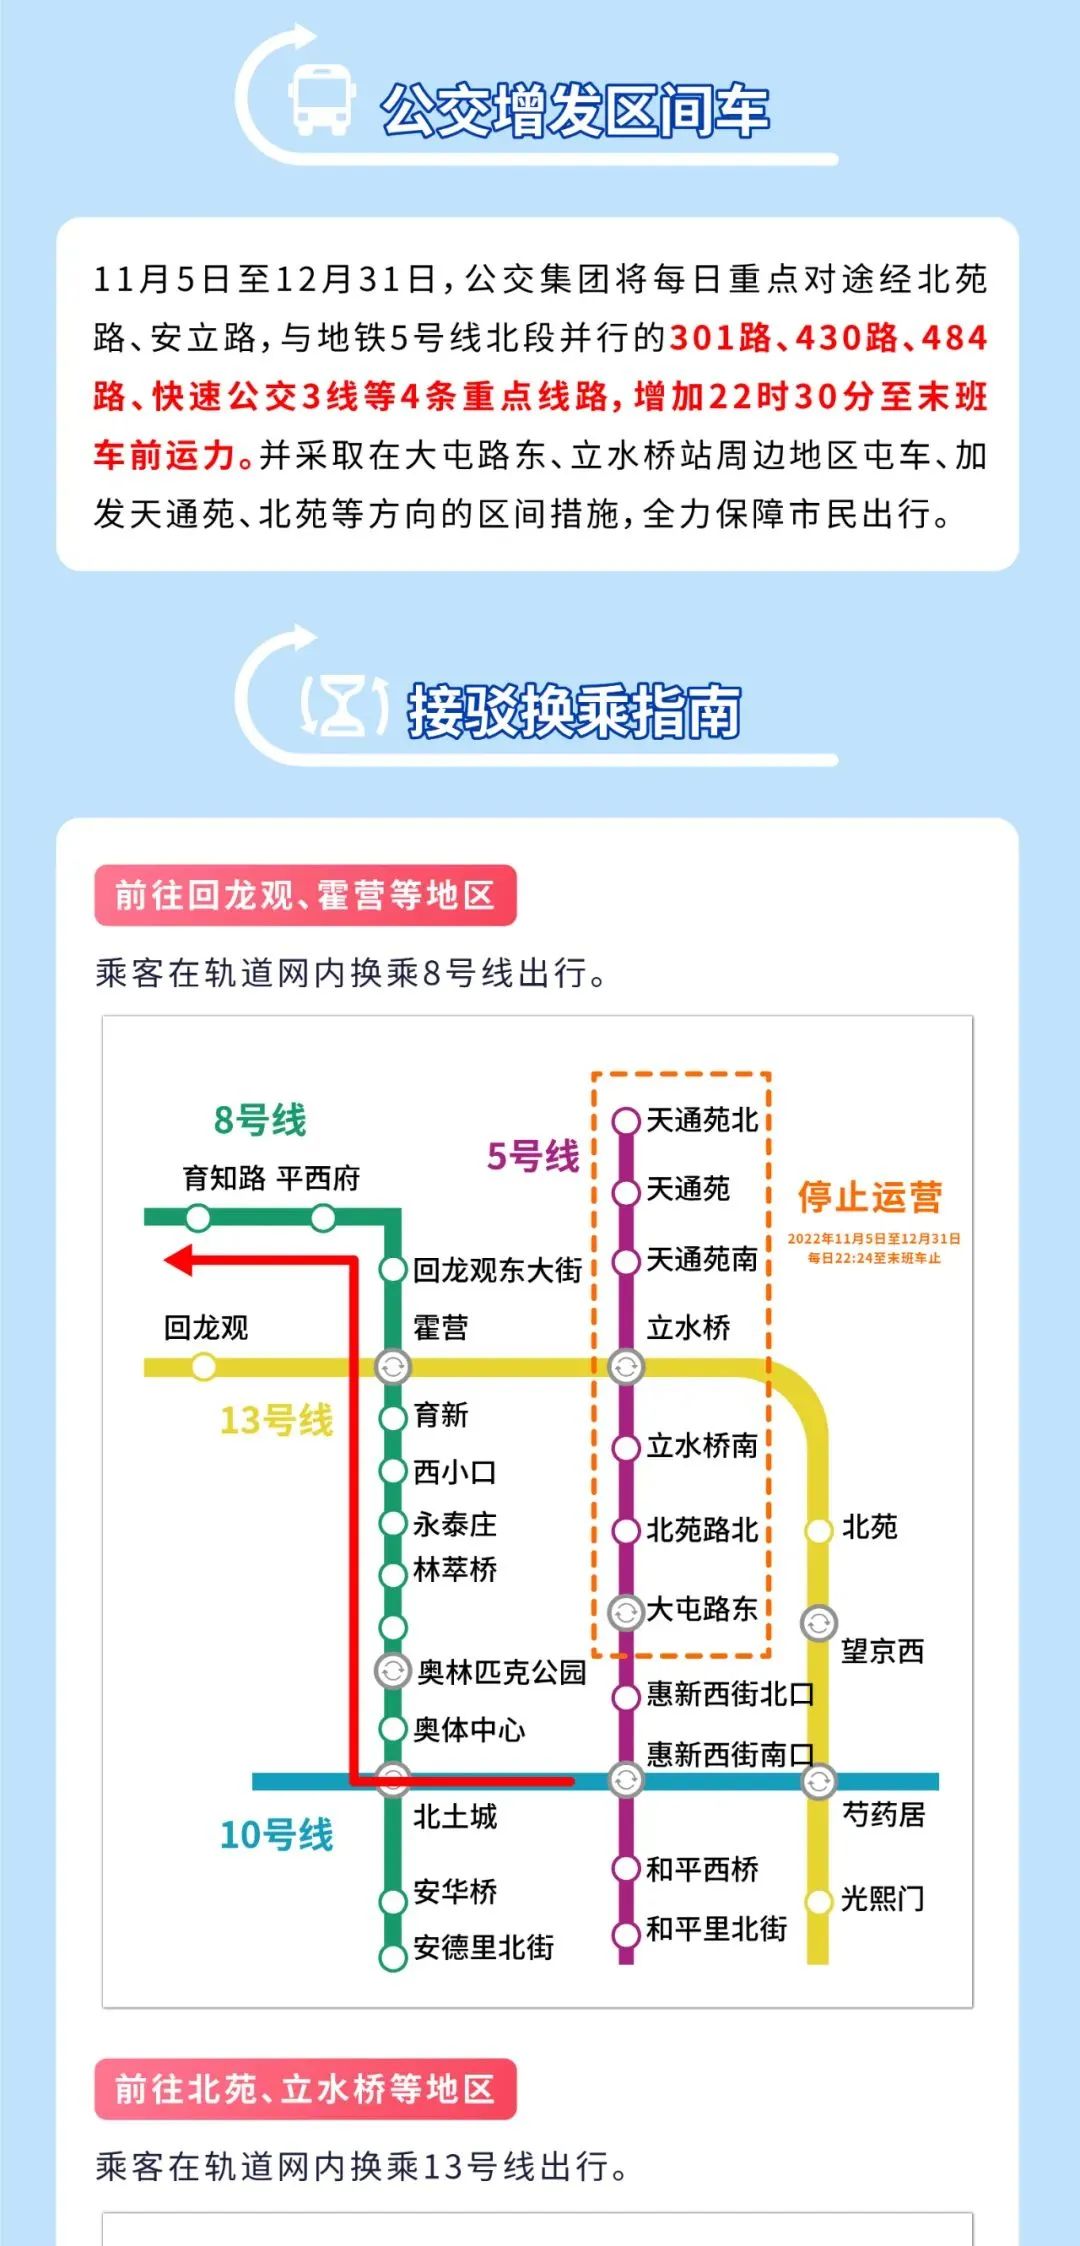 地铁5号线线路图北京图片